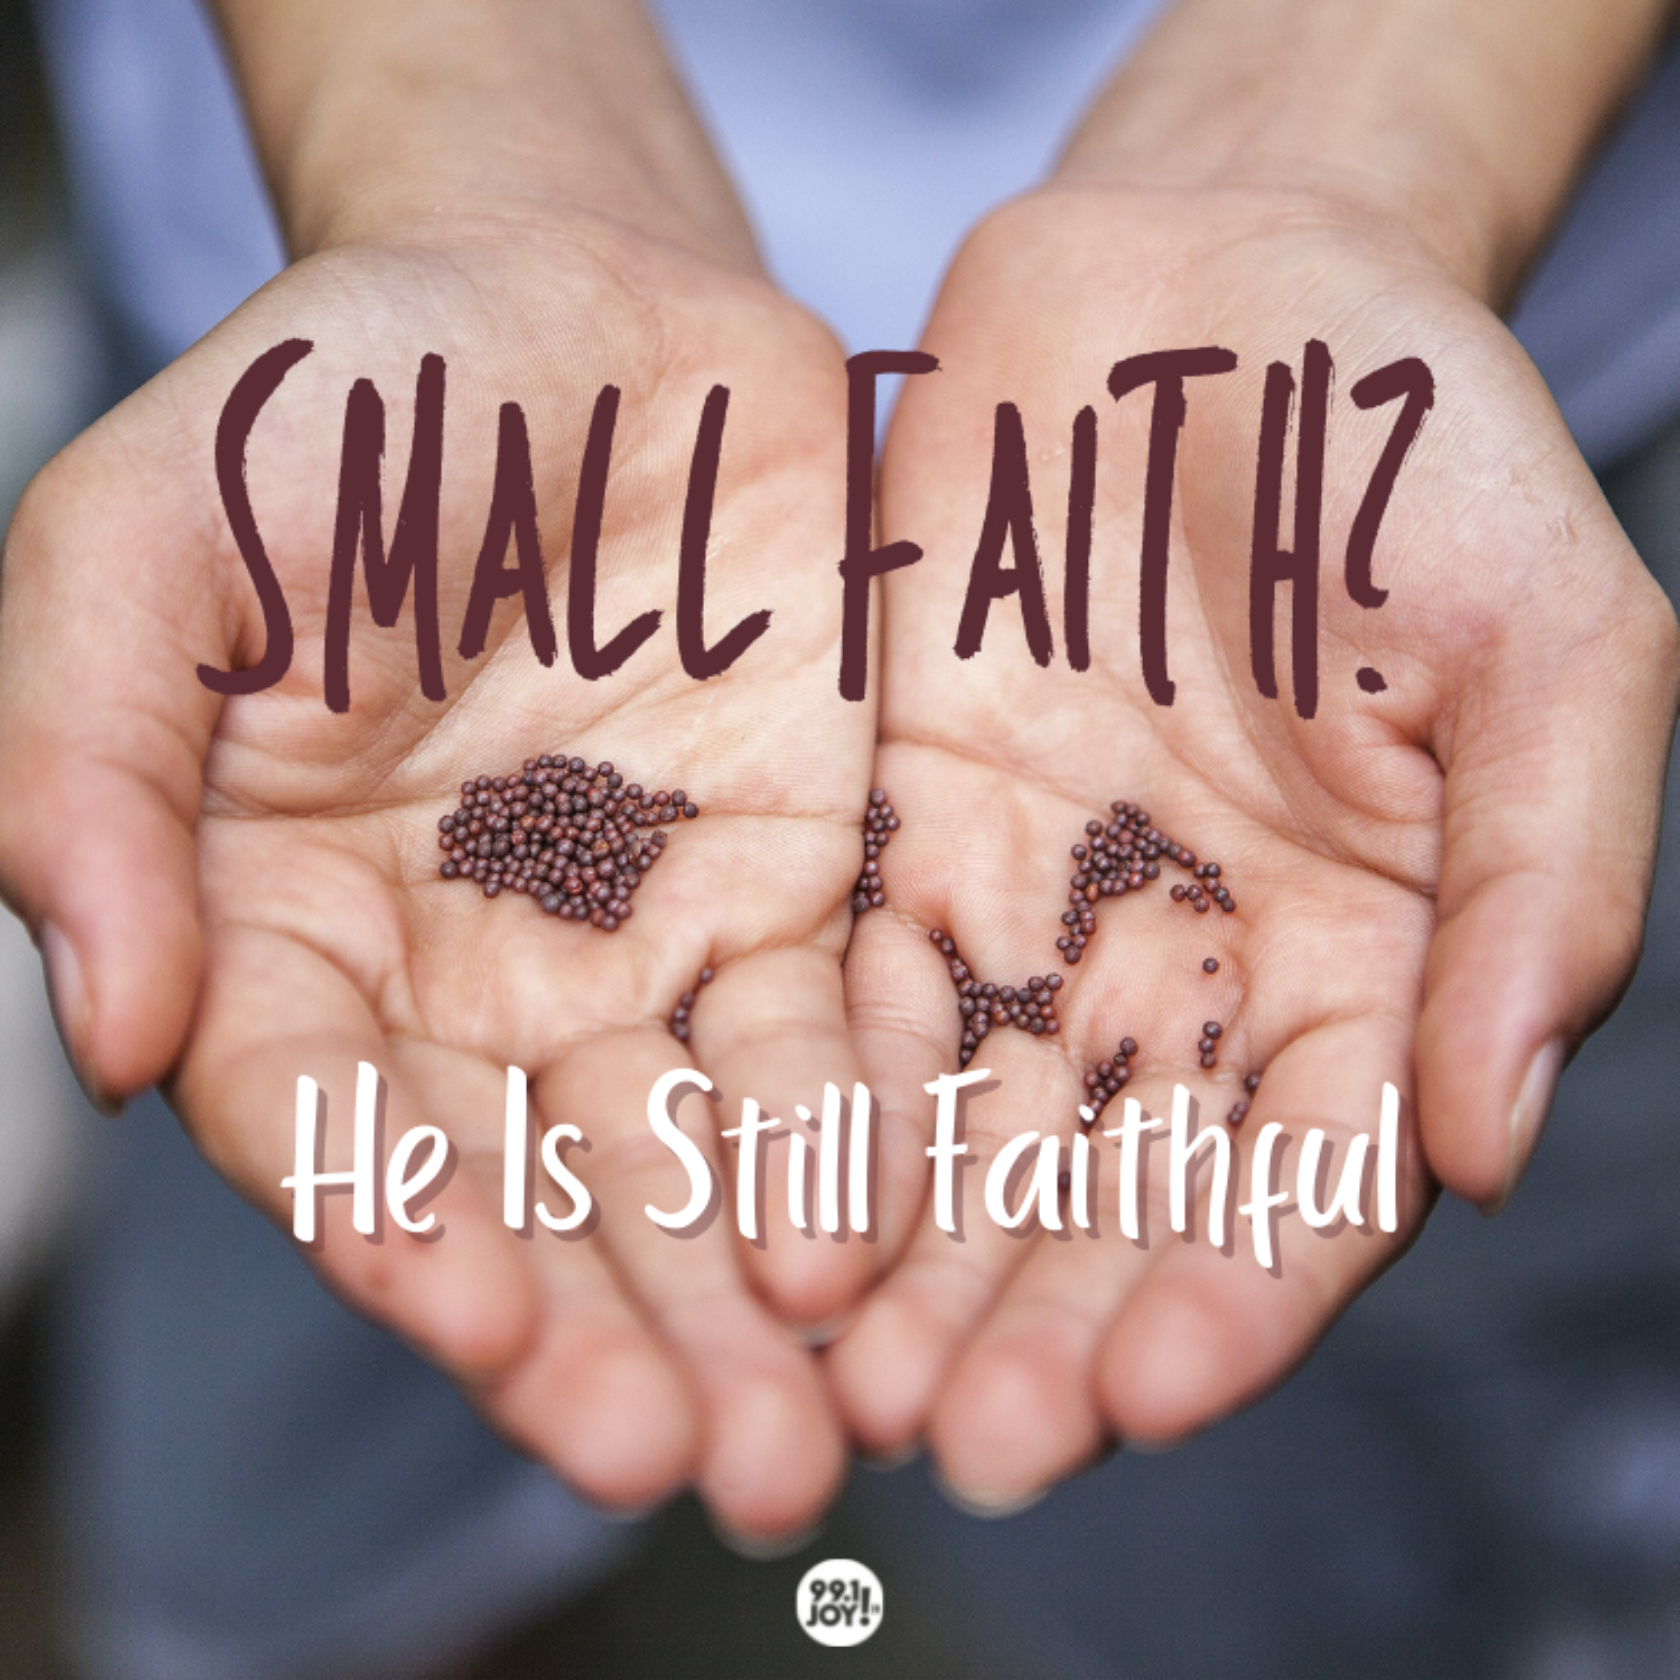 Small Faith? He Is Still Faithful